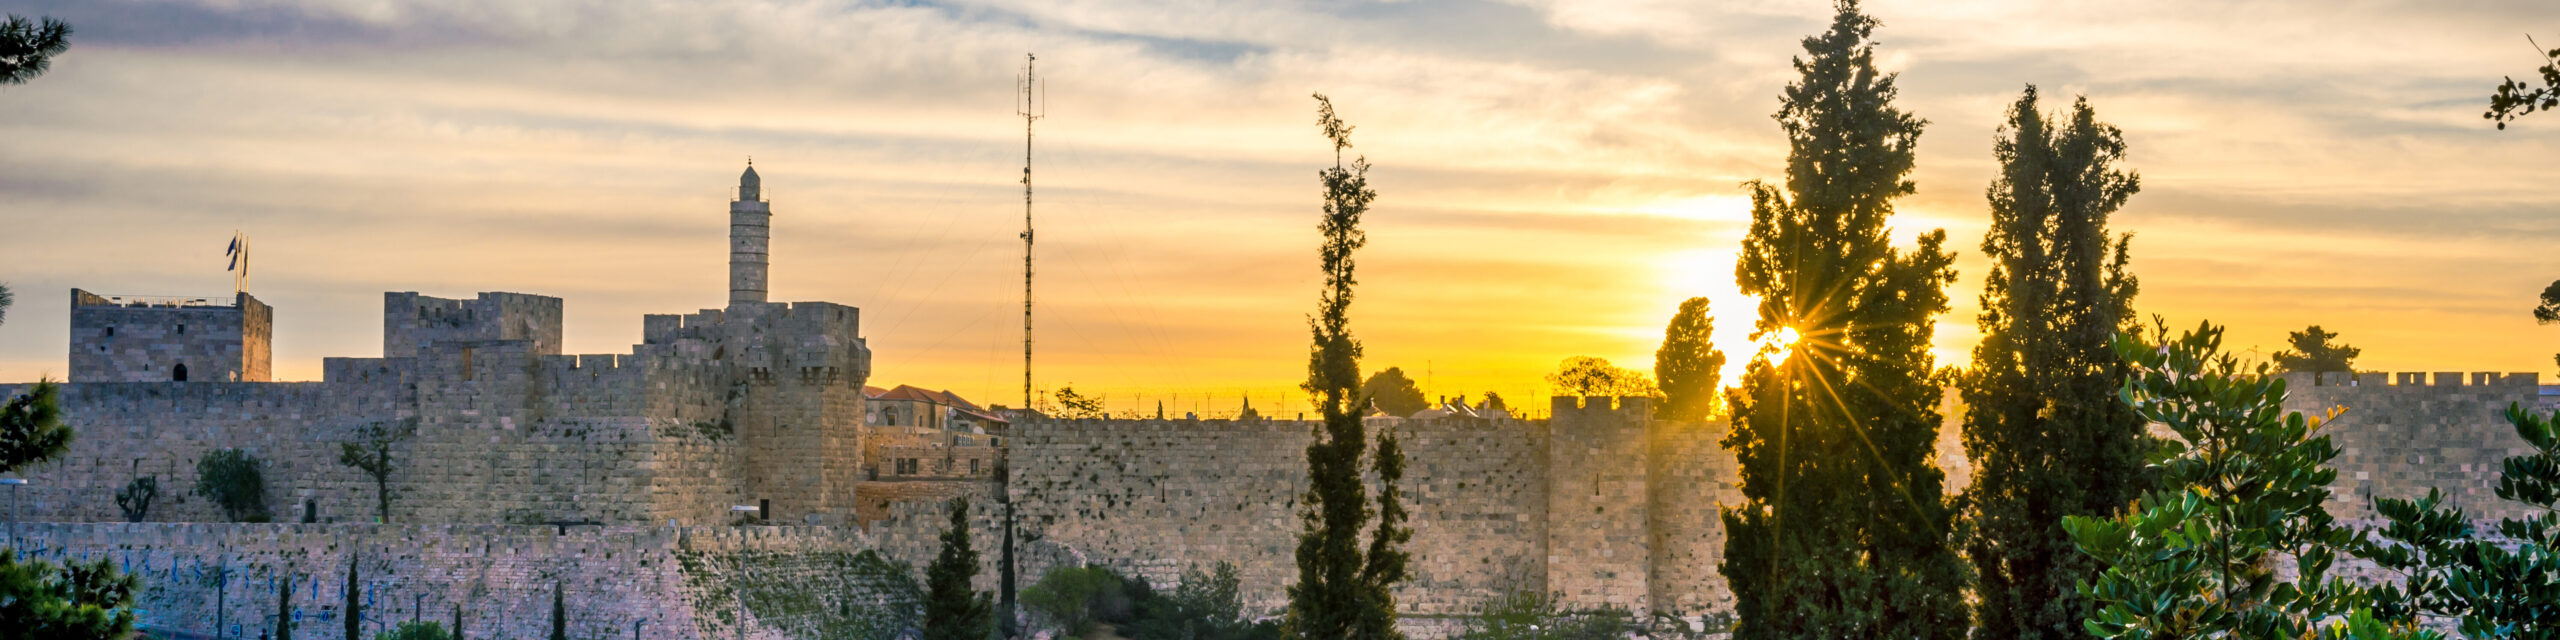 Sonnenaufgang über den Mauern von Jerusalem